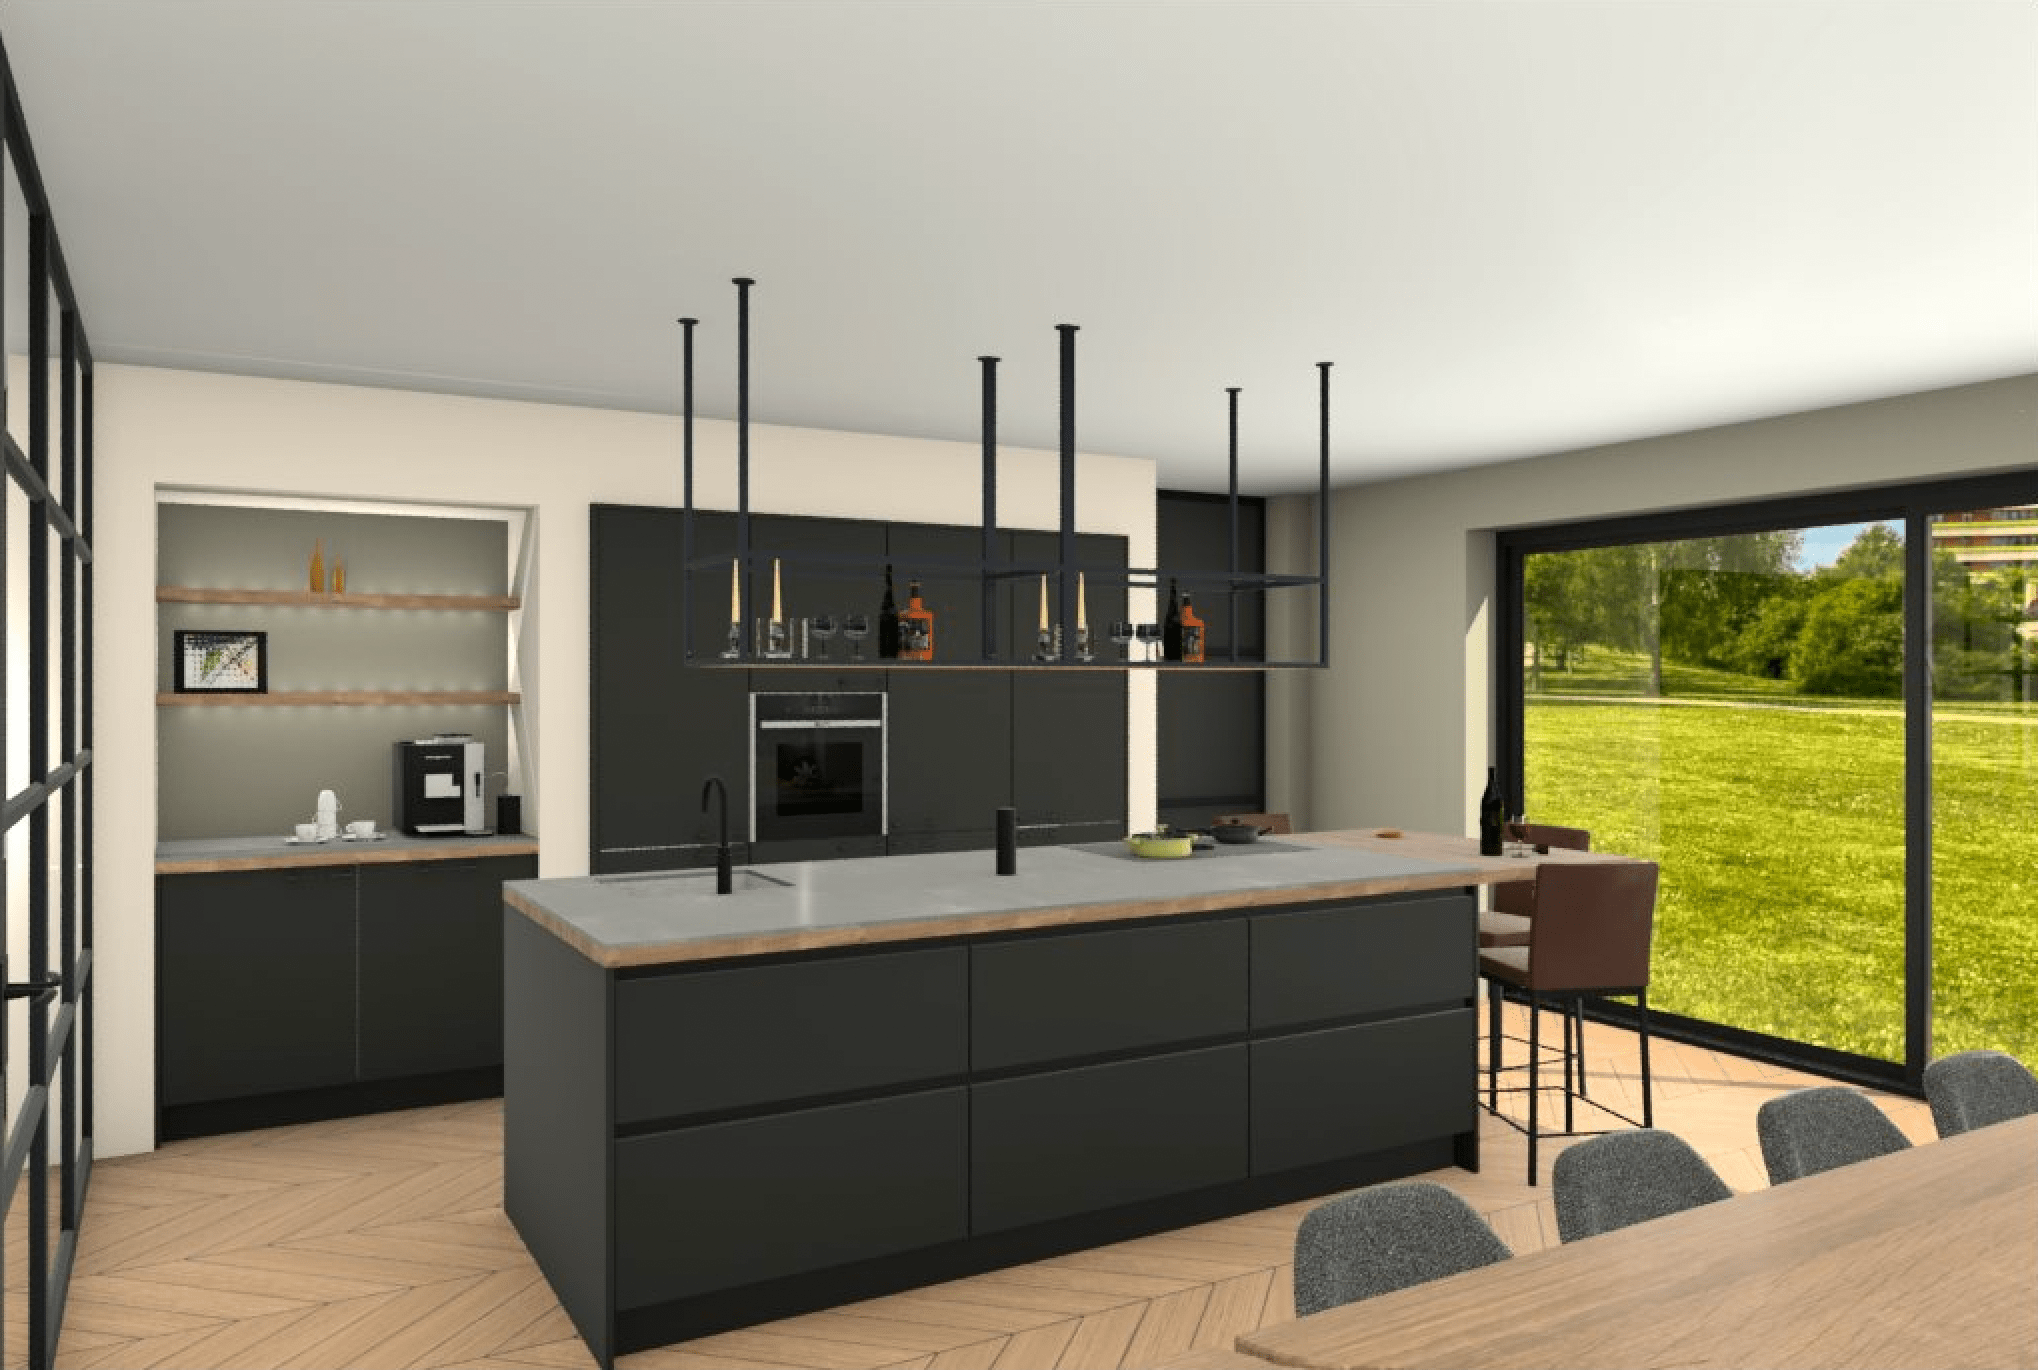 Uw nieuwe keuken in 3D? Laat u inspireren door onze voorbeelden